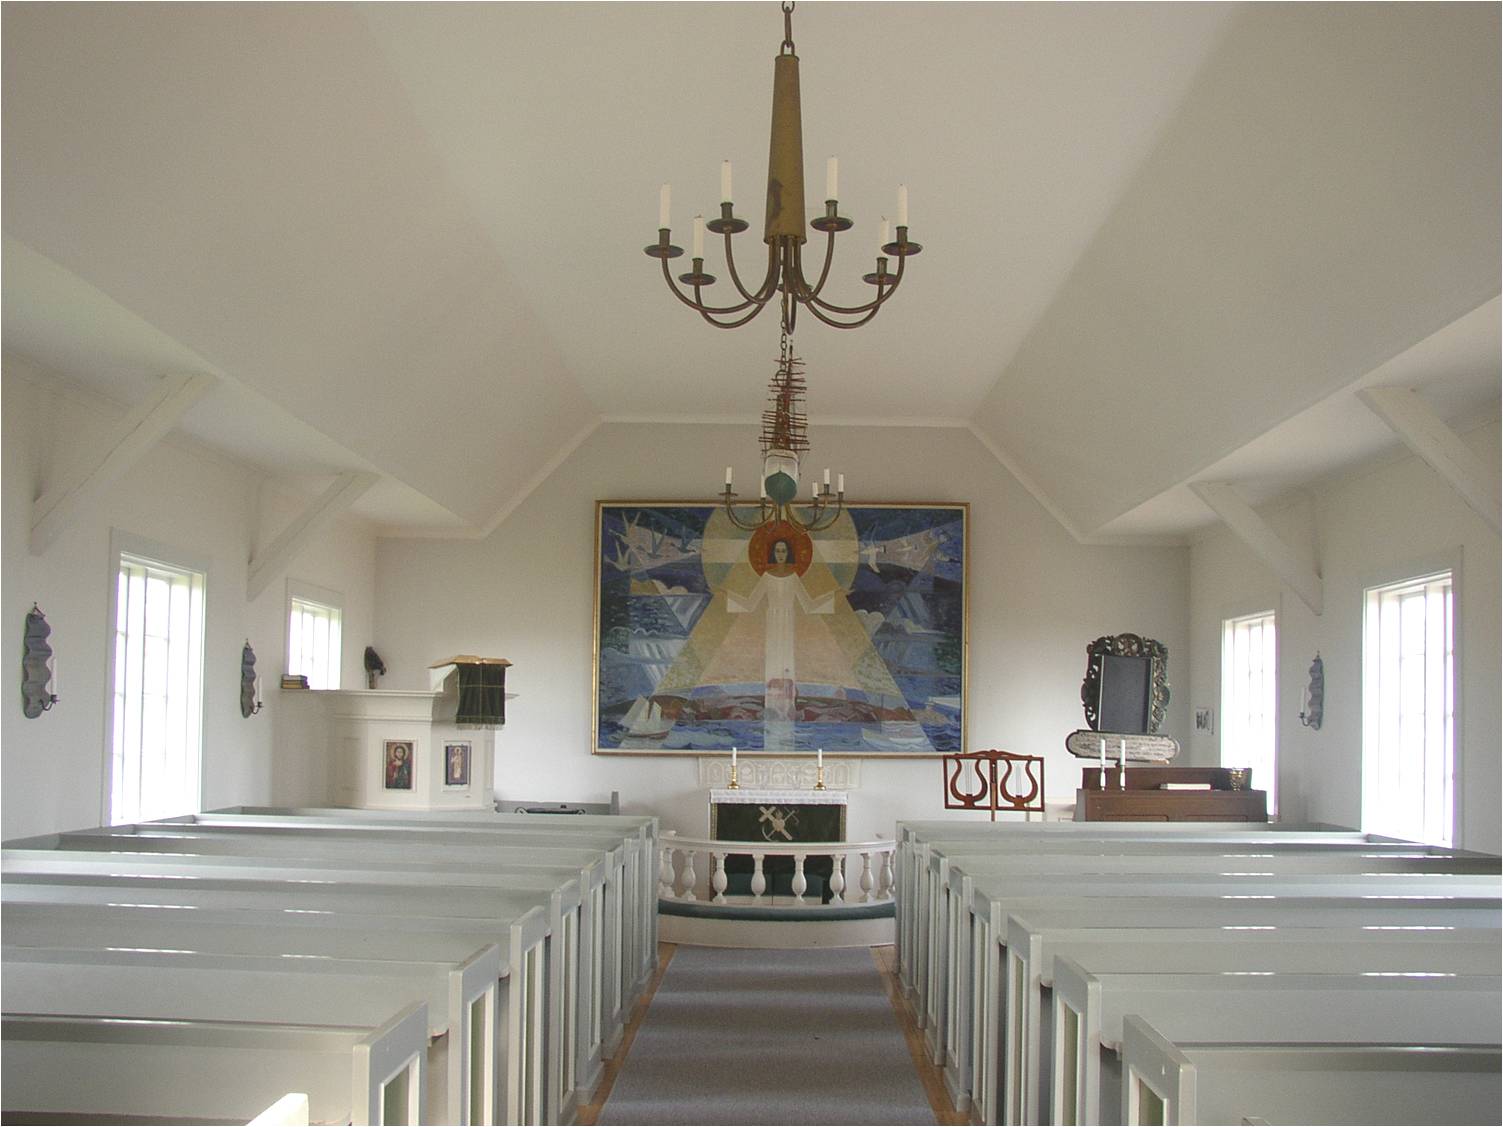 Kapellets interiör från väster med Gösta Bohms altartavla i fonden. 